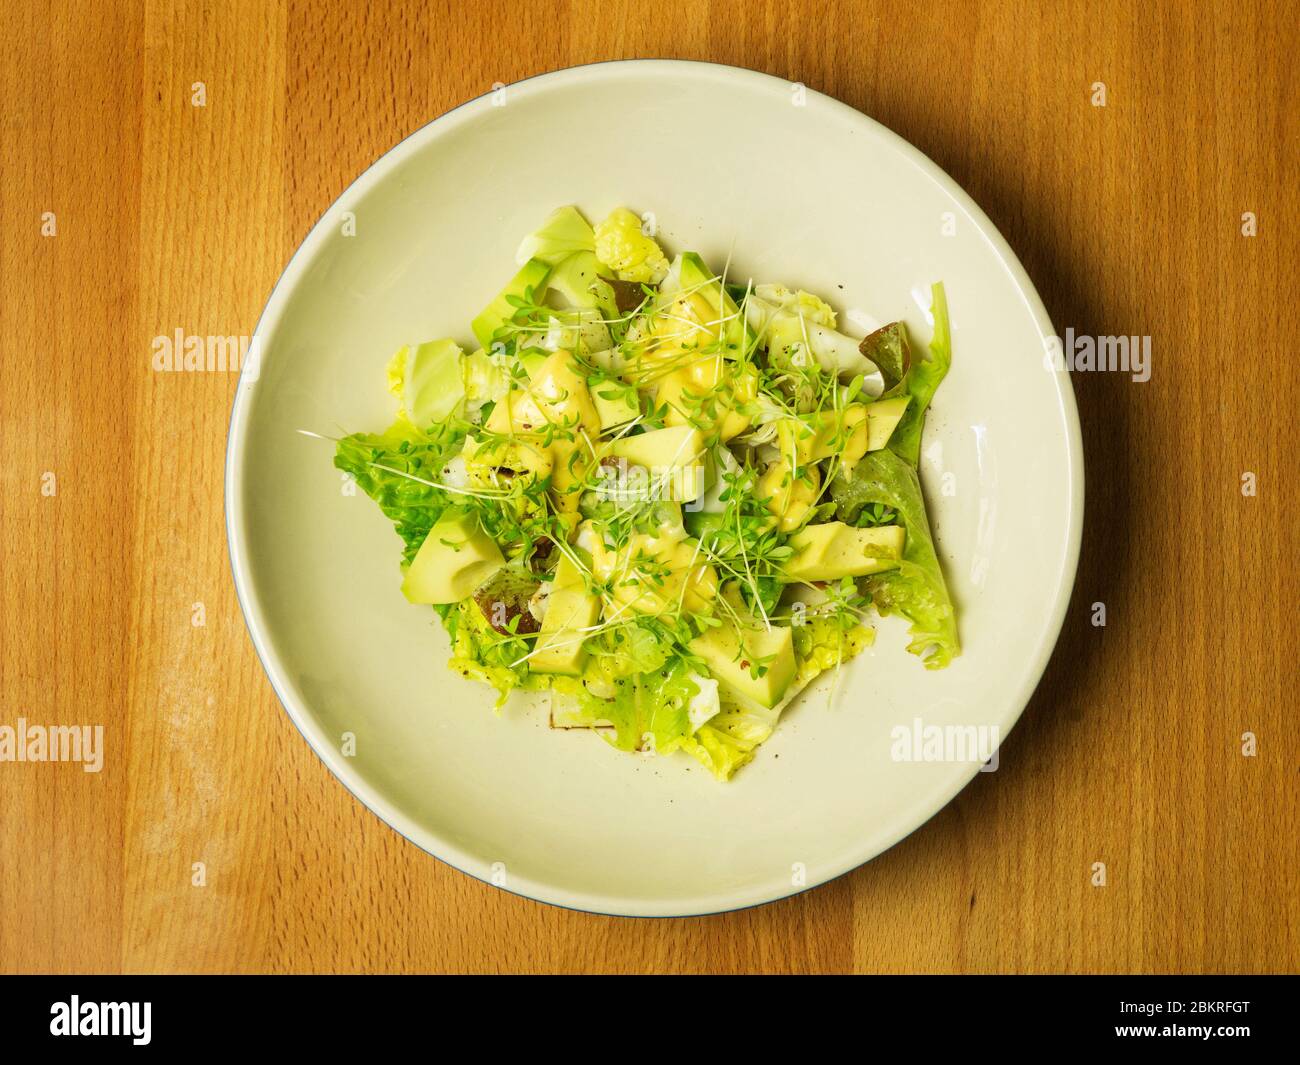 Insalata verde fresca di foglie di lattuga miste con pezzi di avocado e maionese fatte in casa con una guarnitura di cress Foto Stock